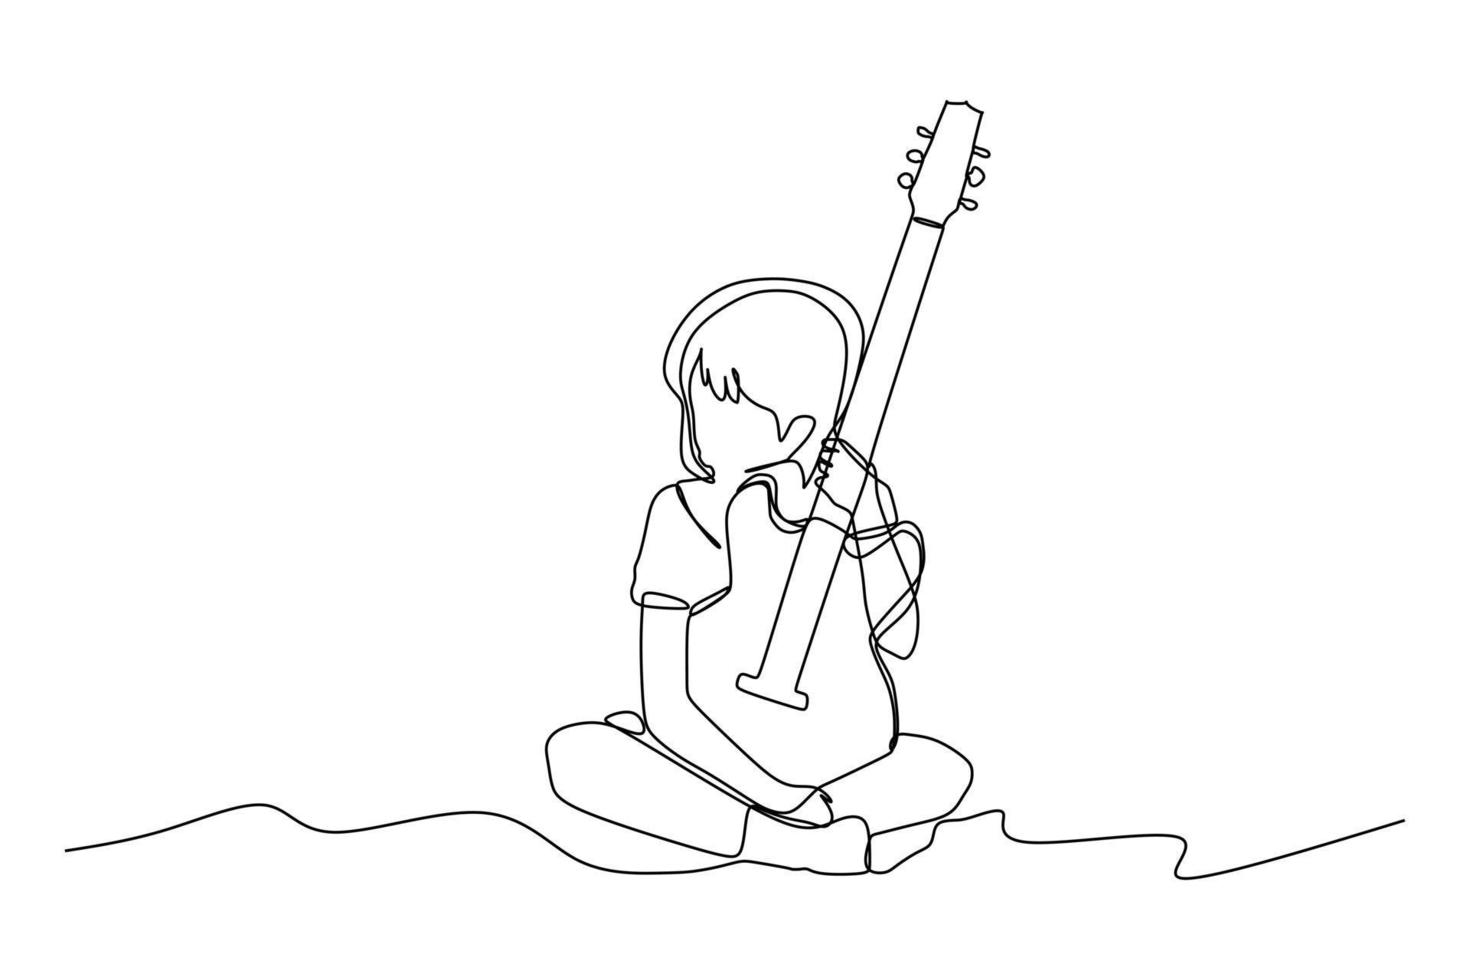 único desenho de linha contínua de uma criança segurando uma guitarra - ilustração em vetor design moderno de desenho de uma linha